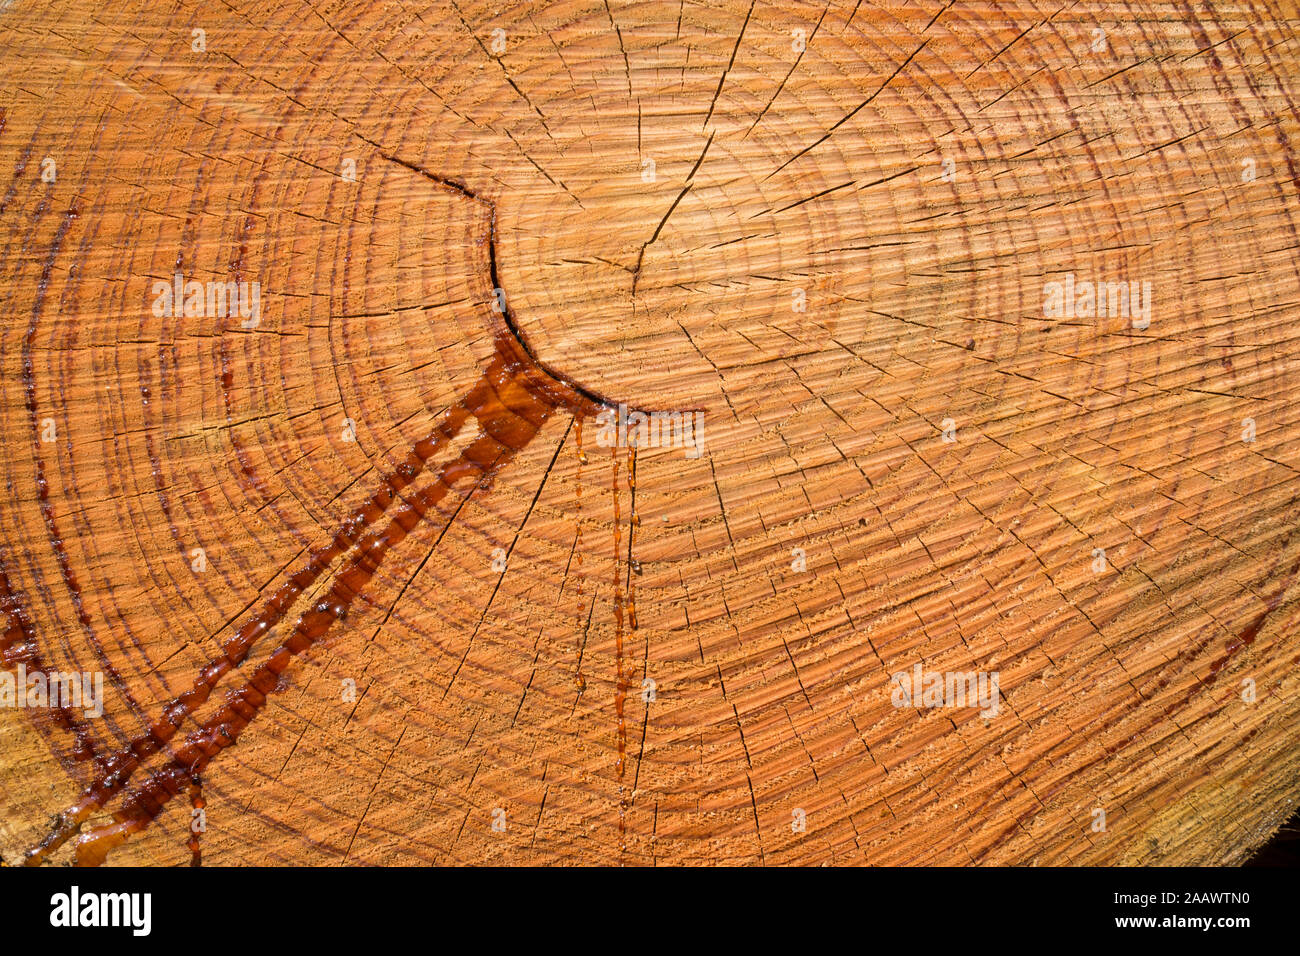 Full frame shot of wet tree stump Stock Photo